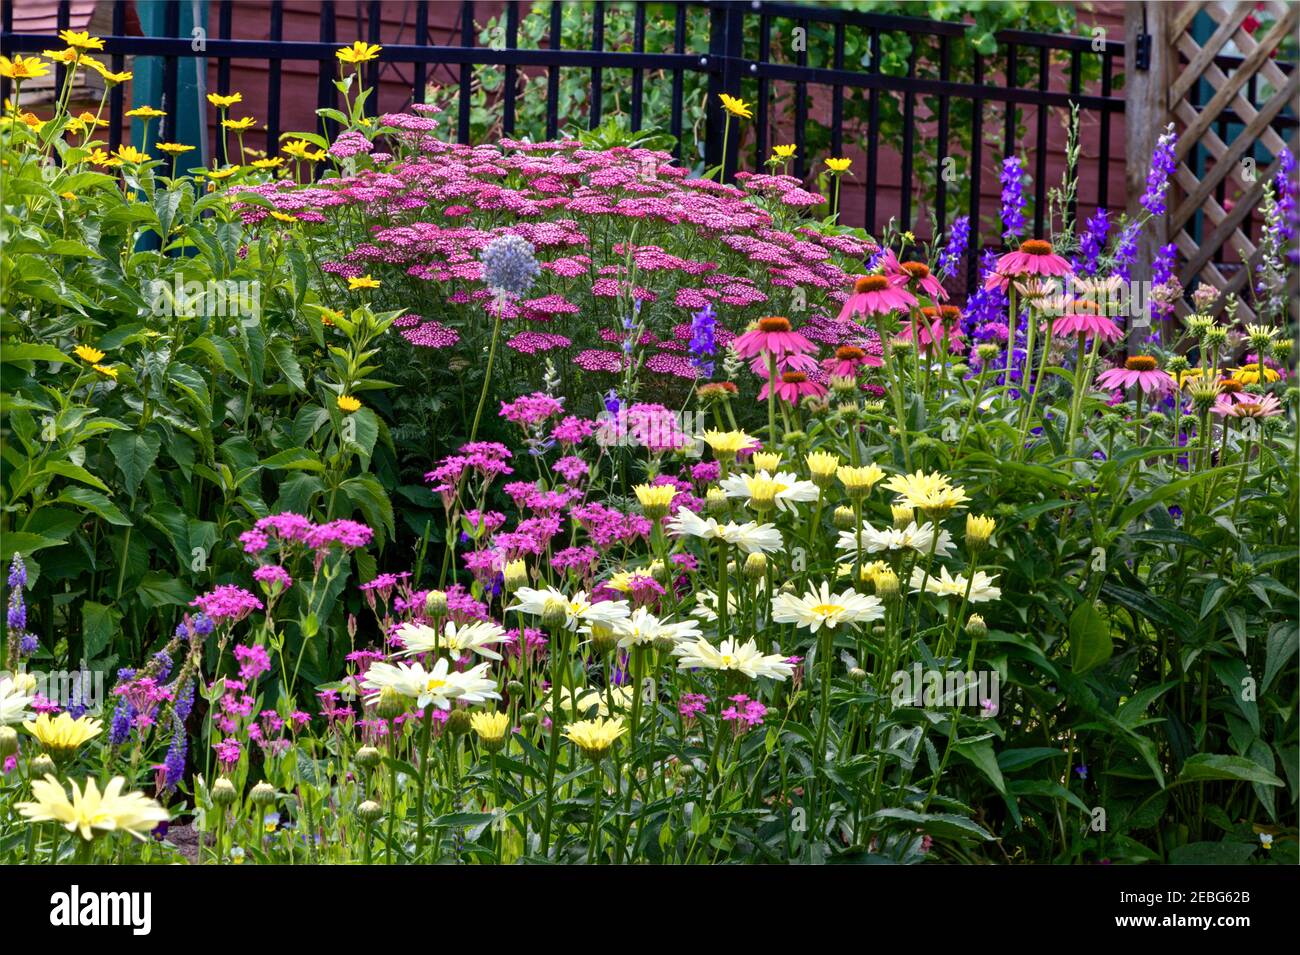 Une combinaison de plantes vivaces et annuelles au milieu de l'été fait une exposition de douche quand en pleine fleur. Banque D'Images